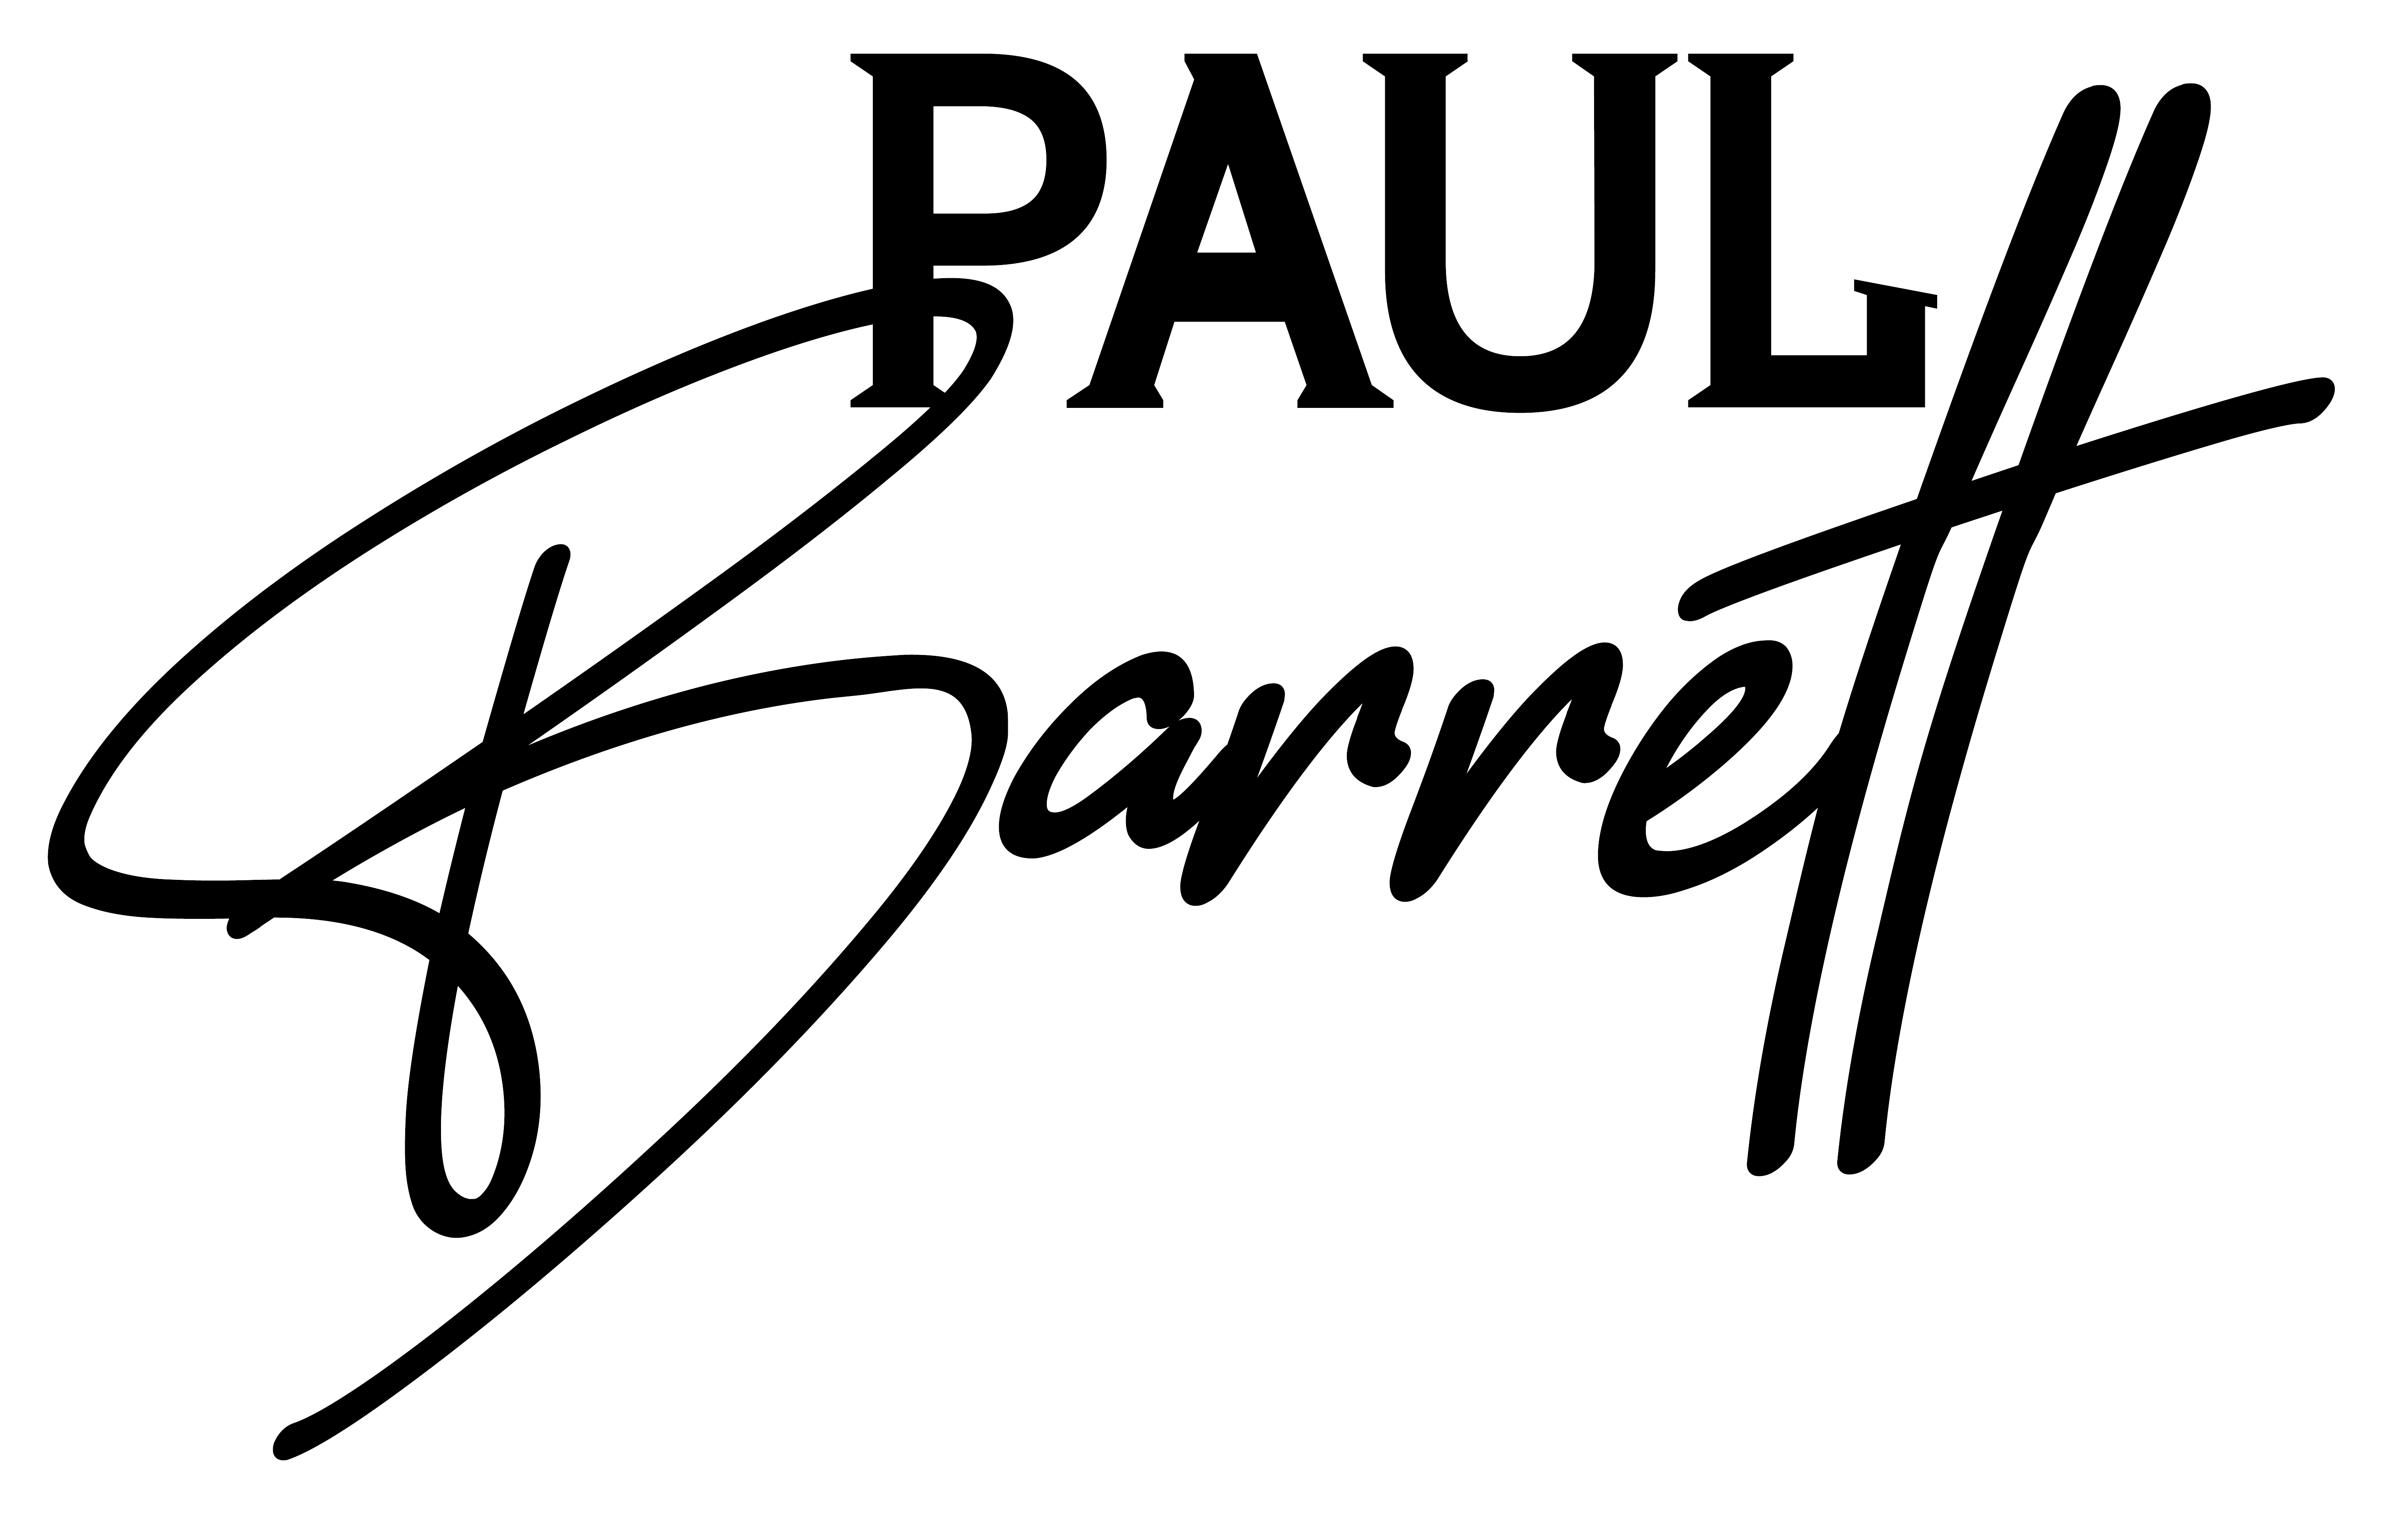 paul-barrett